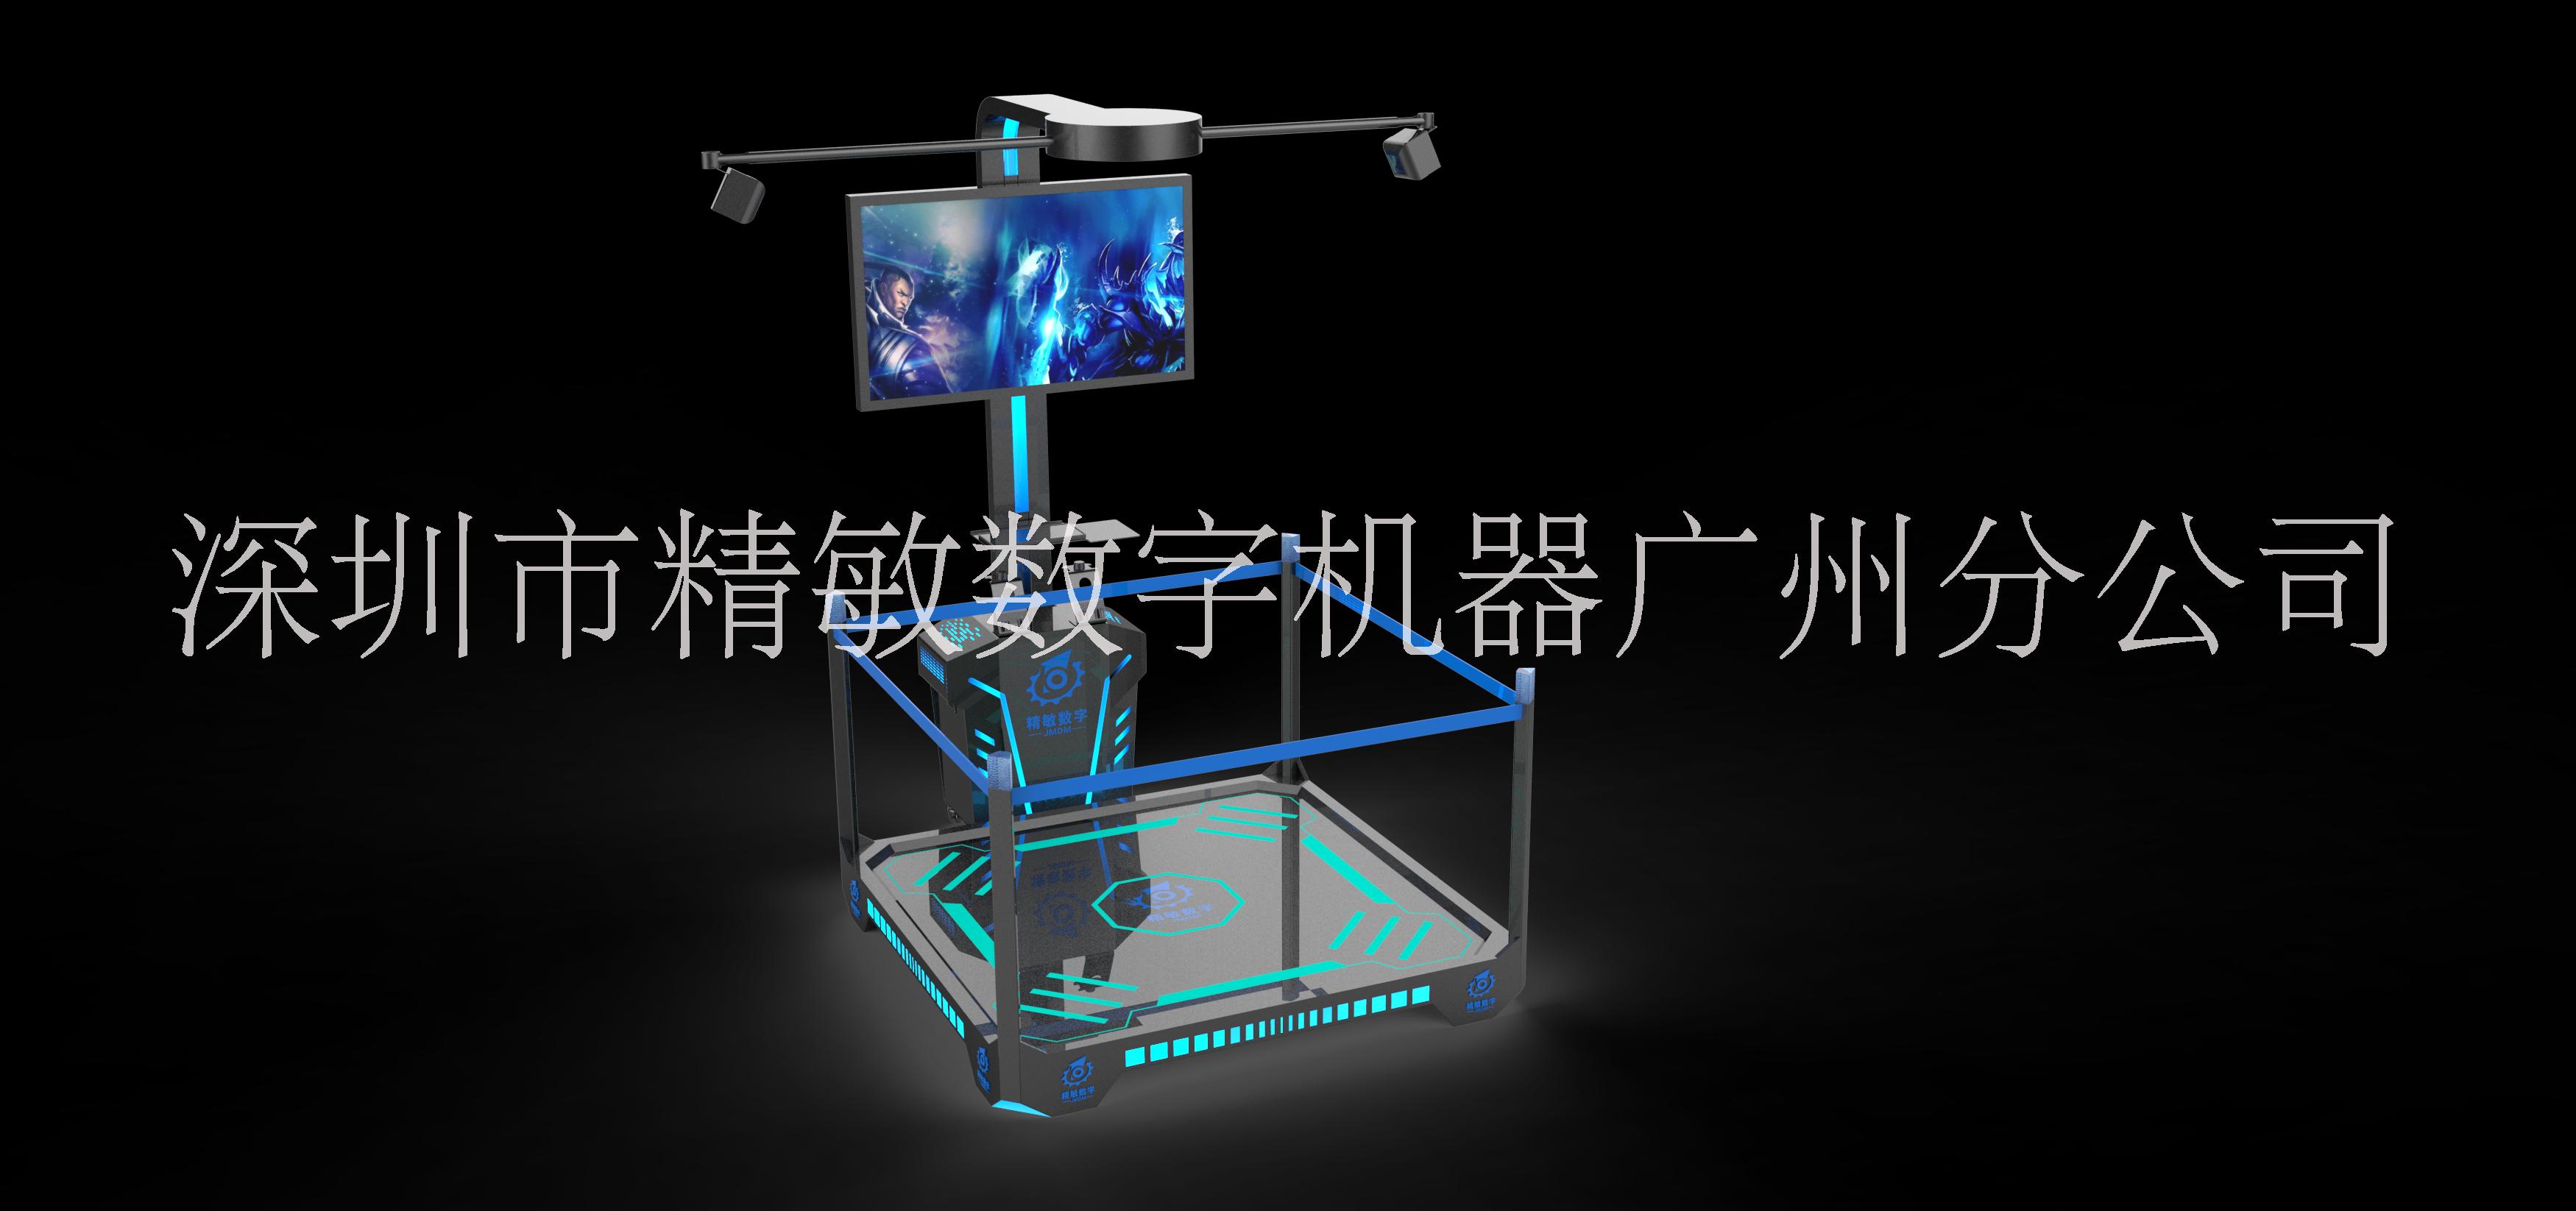 银河幻影VR行走平台HTC节奏光剑体验馆全套游戏设备工地科普馆